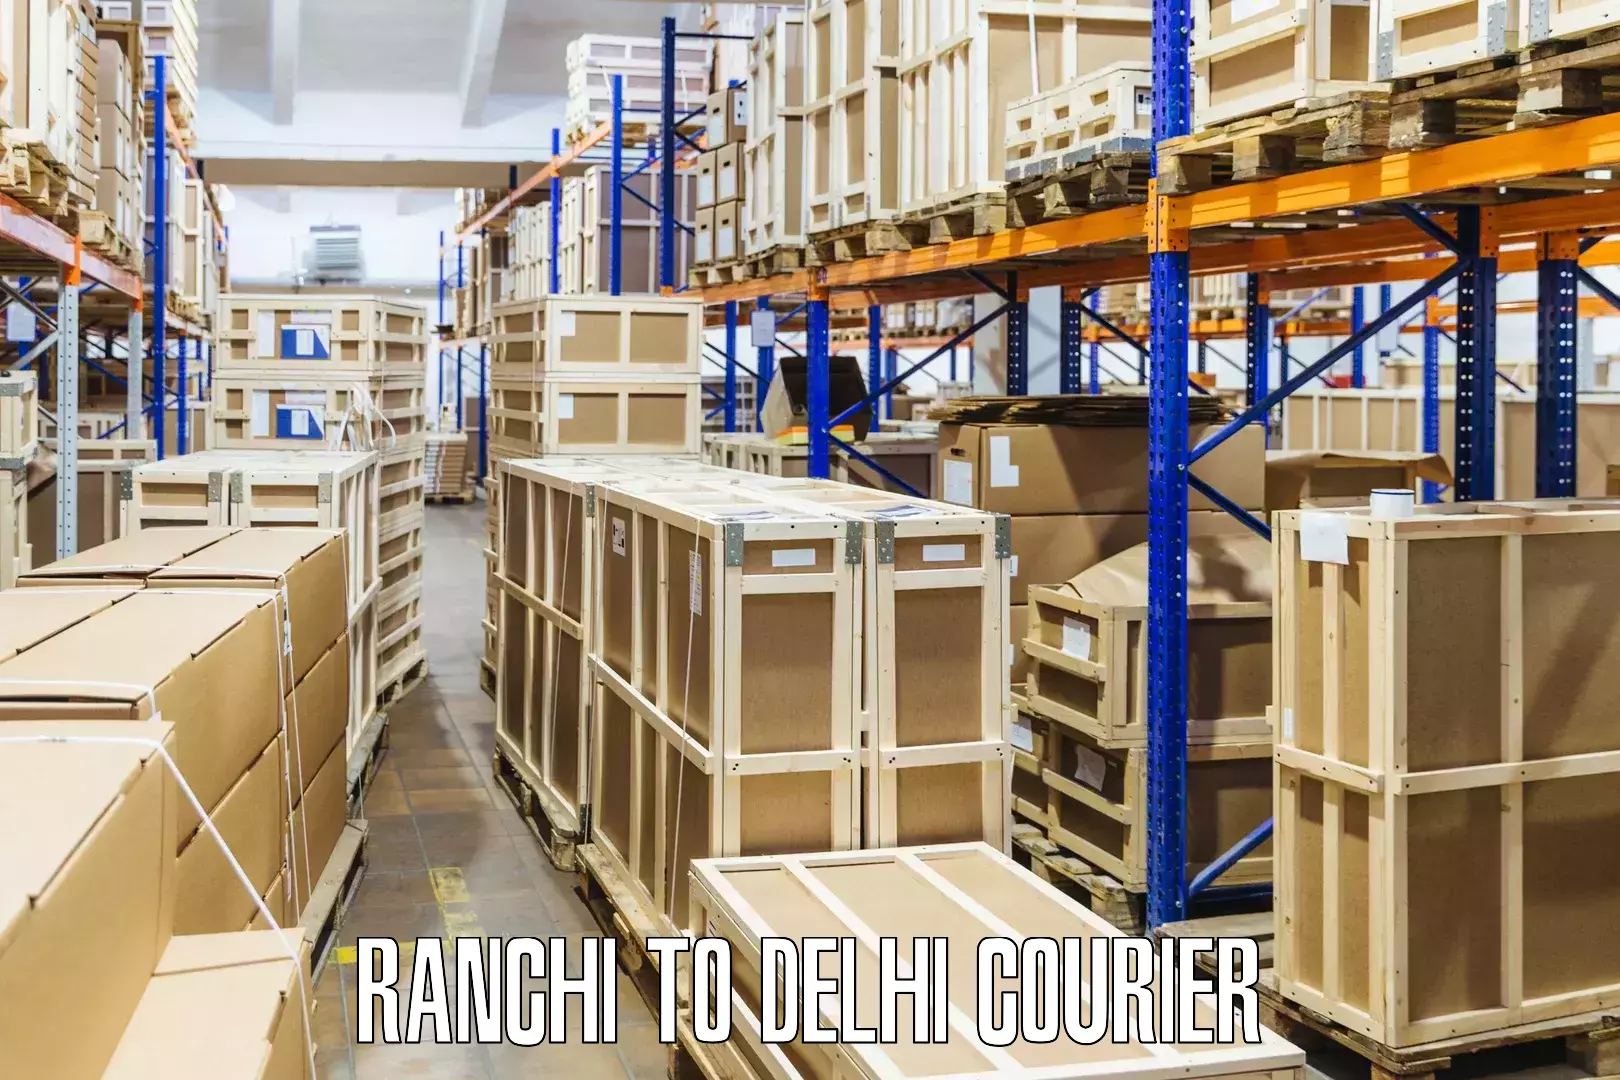 Cargo courier service Ranchi to Krishna Nagar